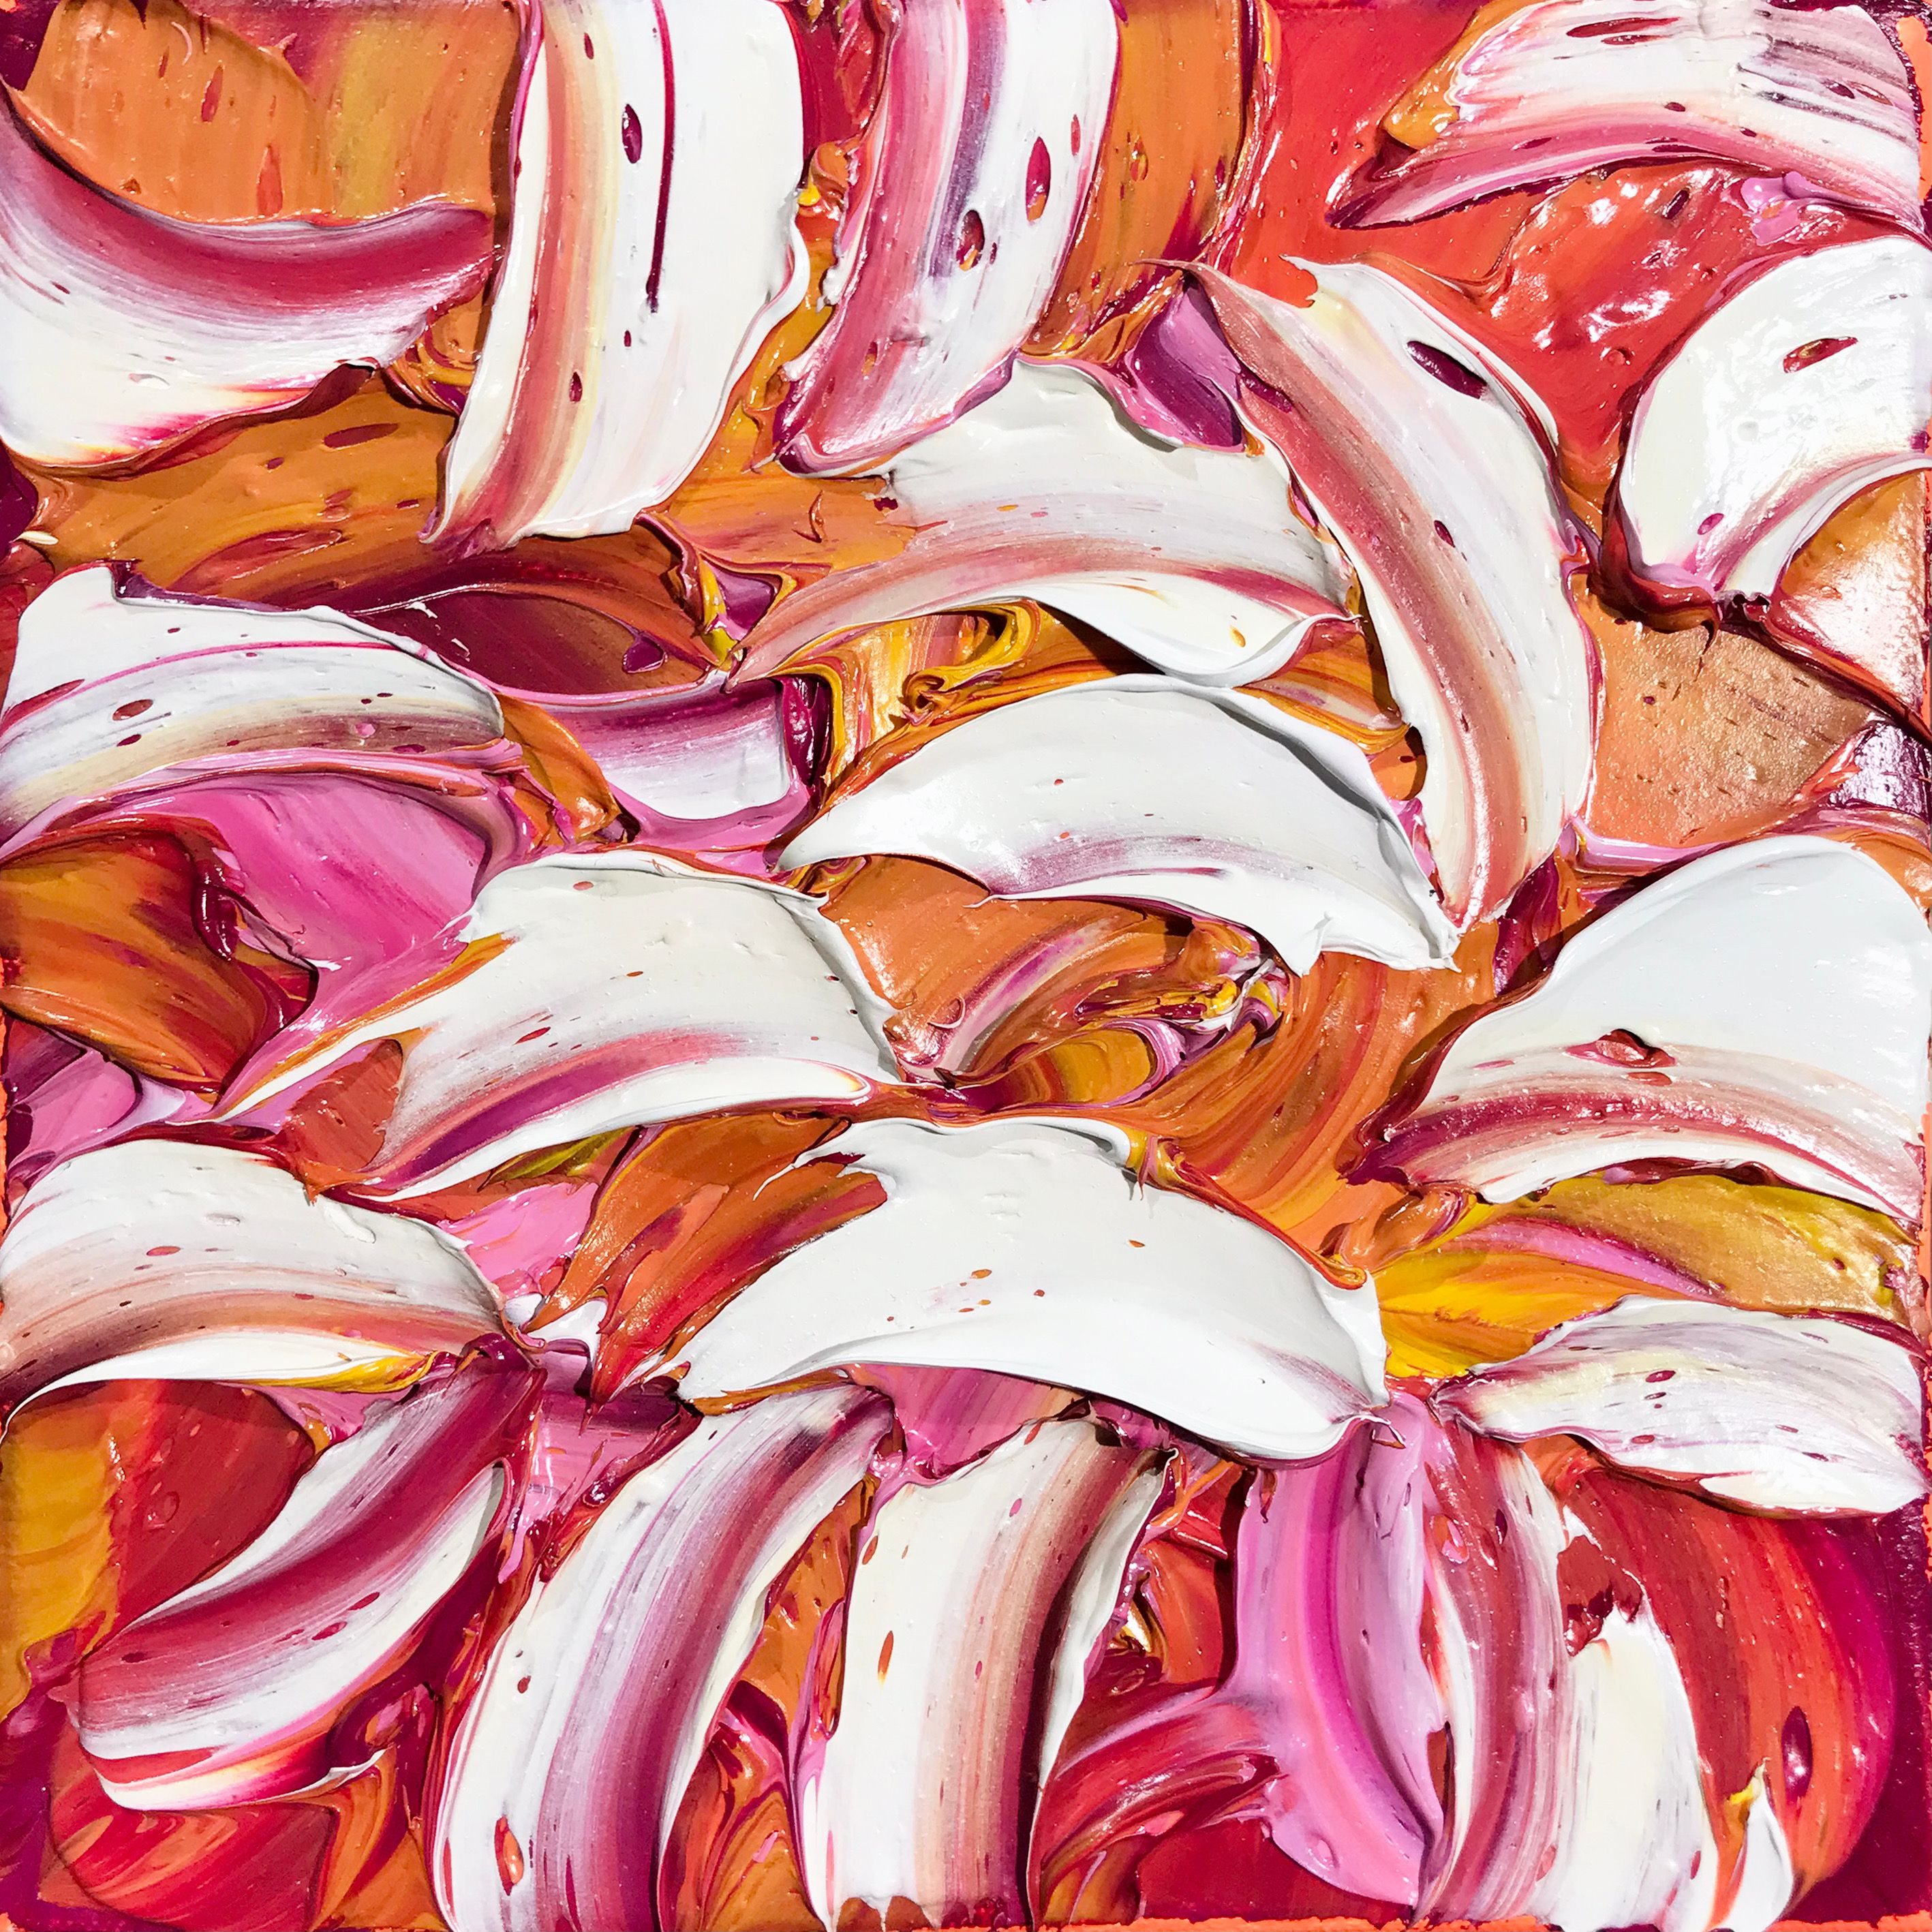 Oliver Messas "Désir..." Peinture abstraite de feuilles colorées